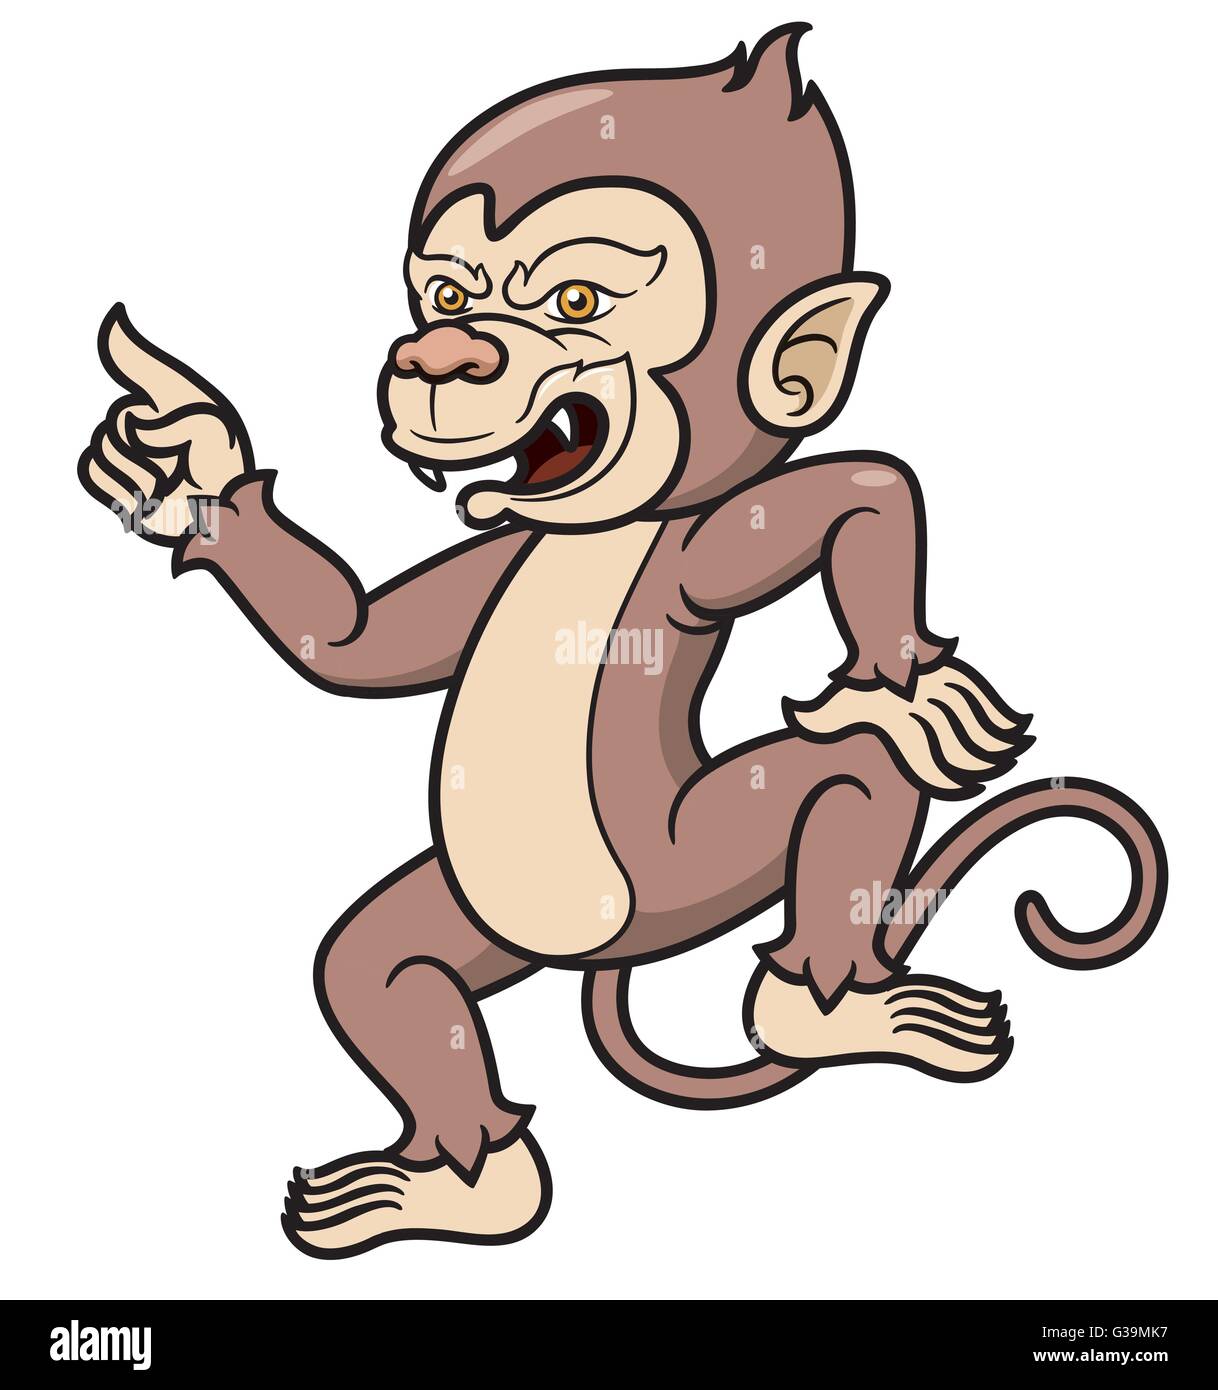 Illustration Vecteur de Cartoon Monkey Illustration de Vecteur